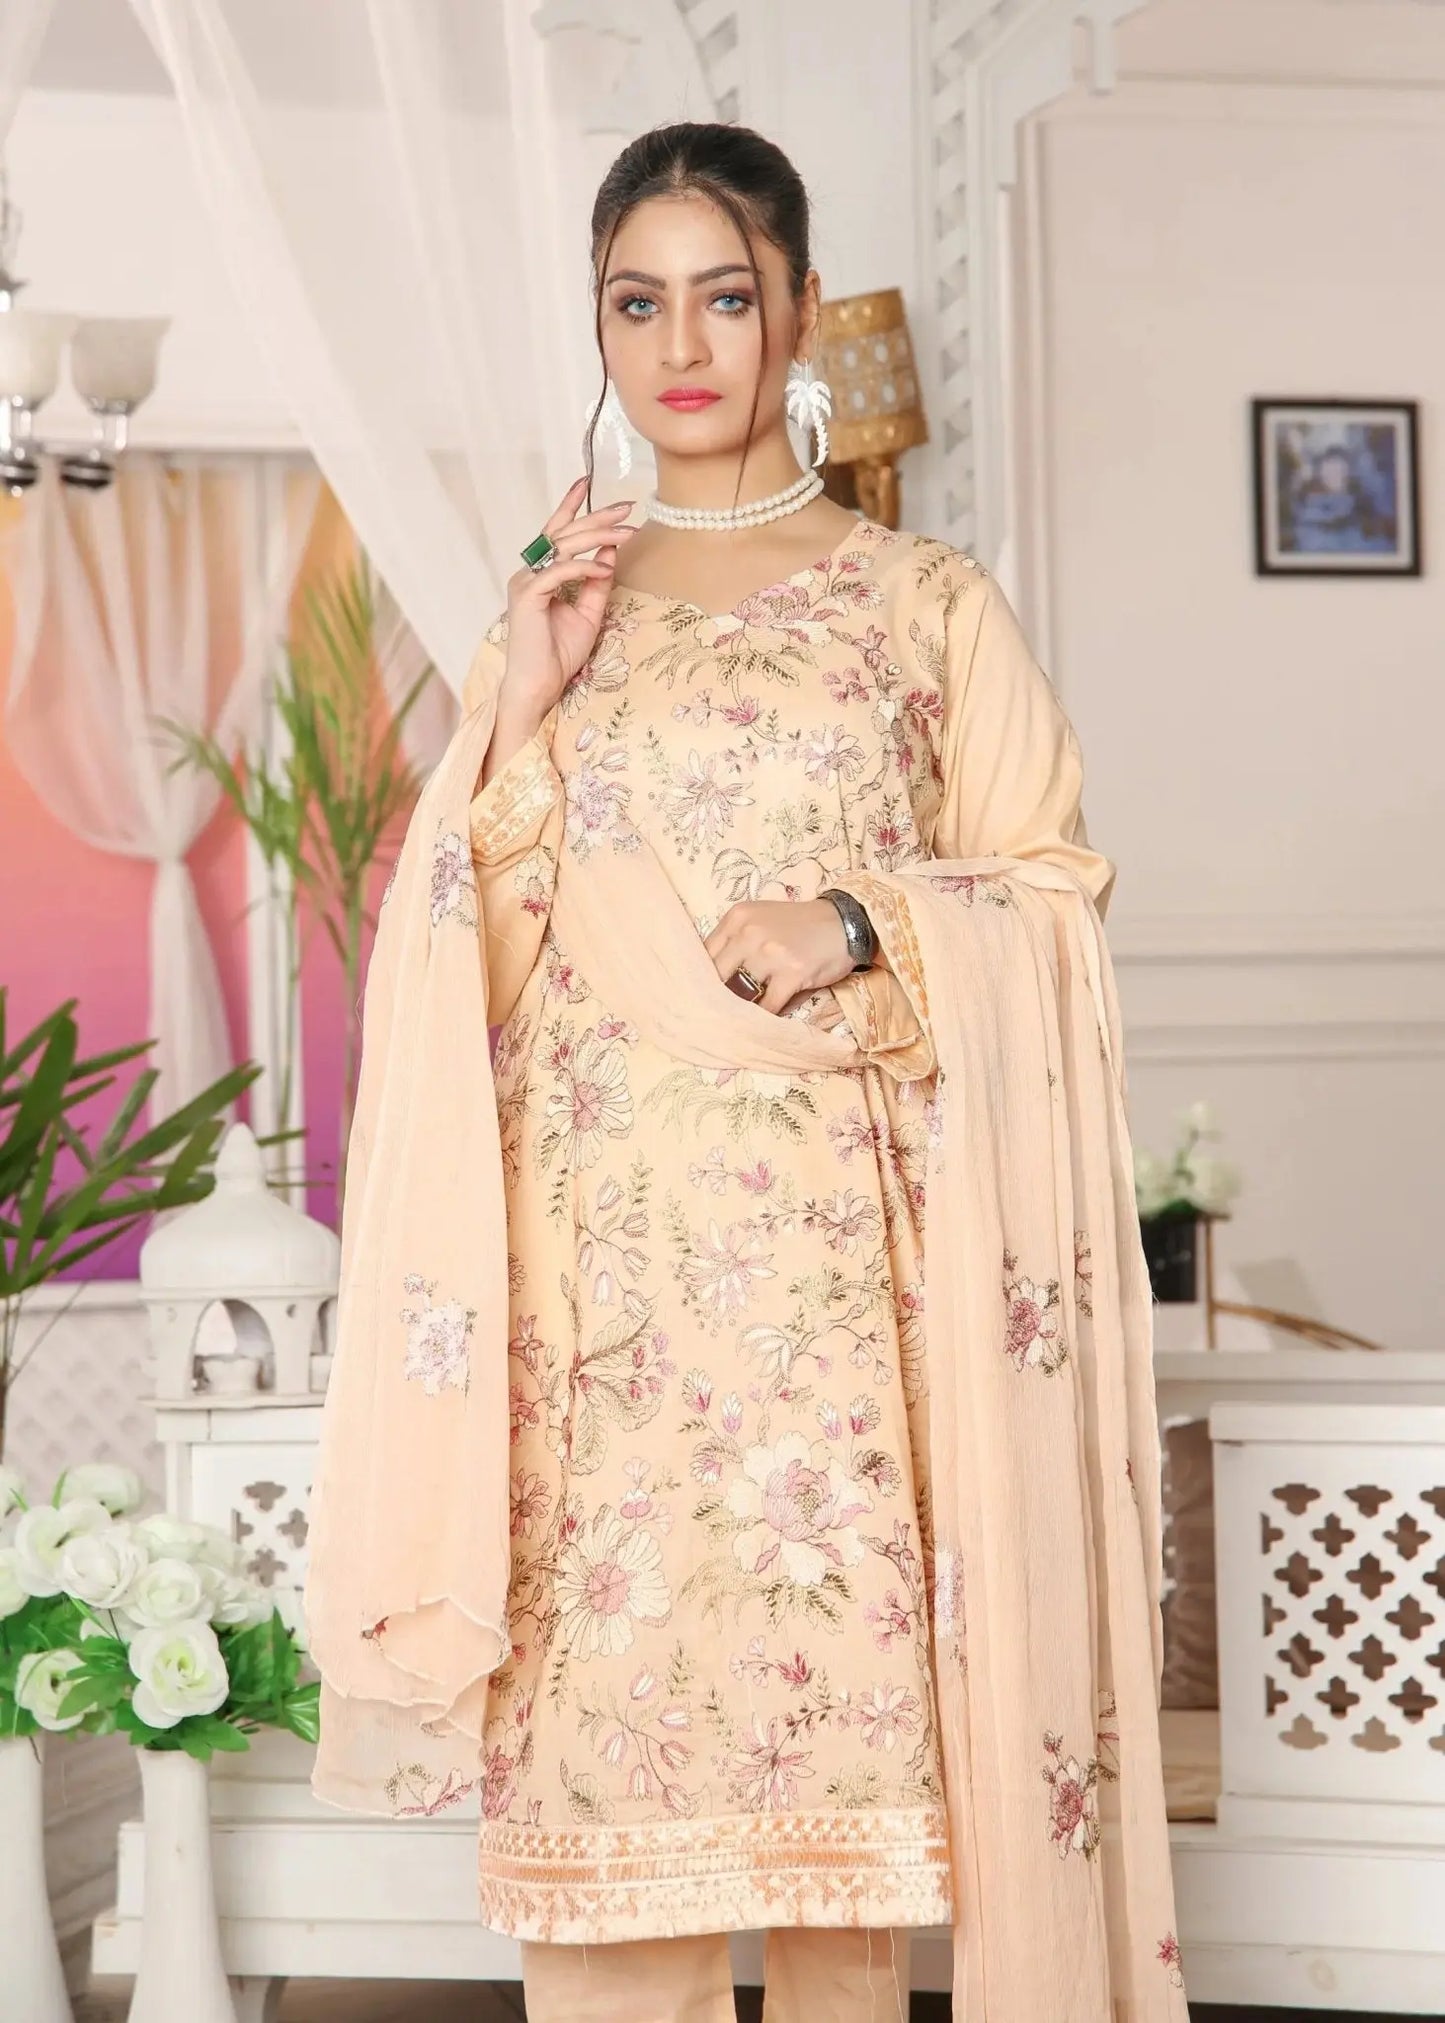 IshDeena Indian Dresses for Women Party Wear Pakistani Salwar Kameez Suit Ready to Wear - IshDeena